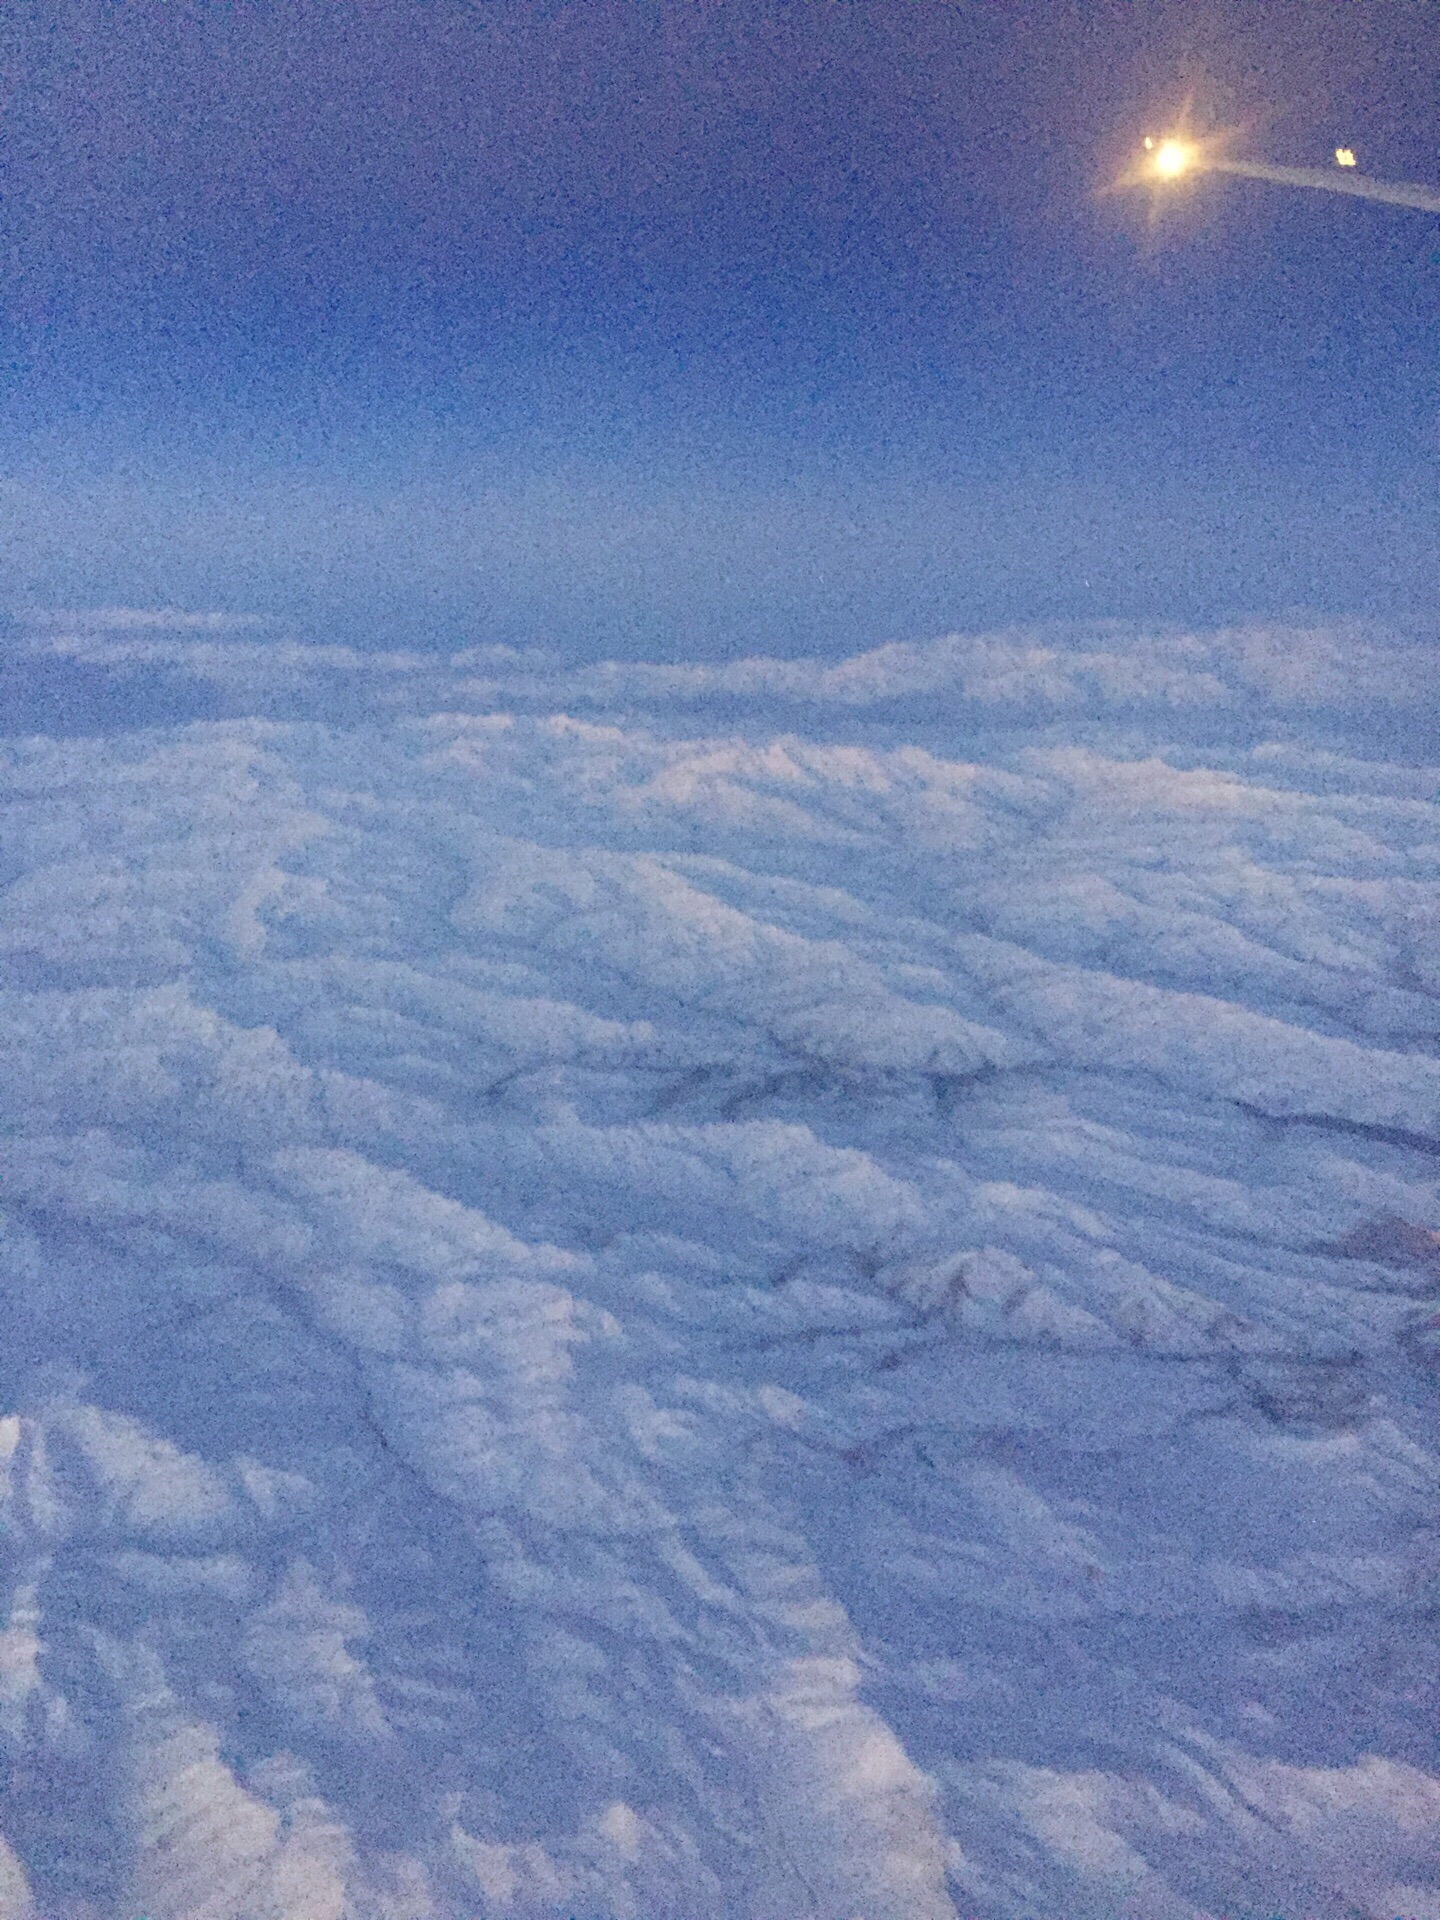 虽然这是在夜里3.40左右，但在飞机✈️上还是可以拍到阿尔卑斯山脉，夜里的雪山依旧清新壮观